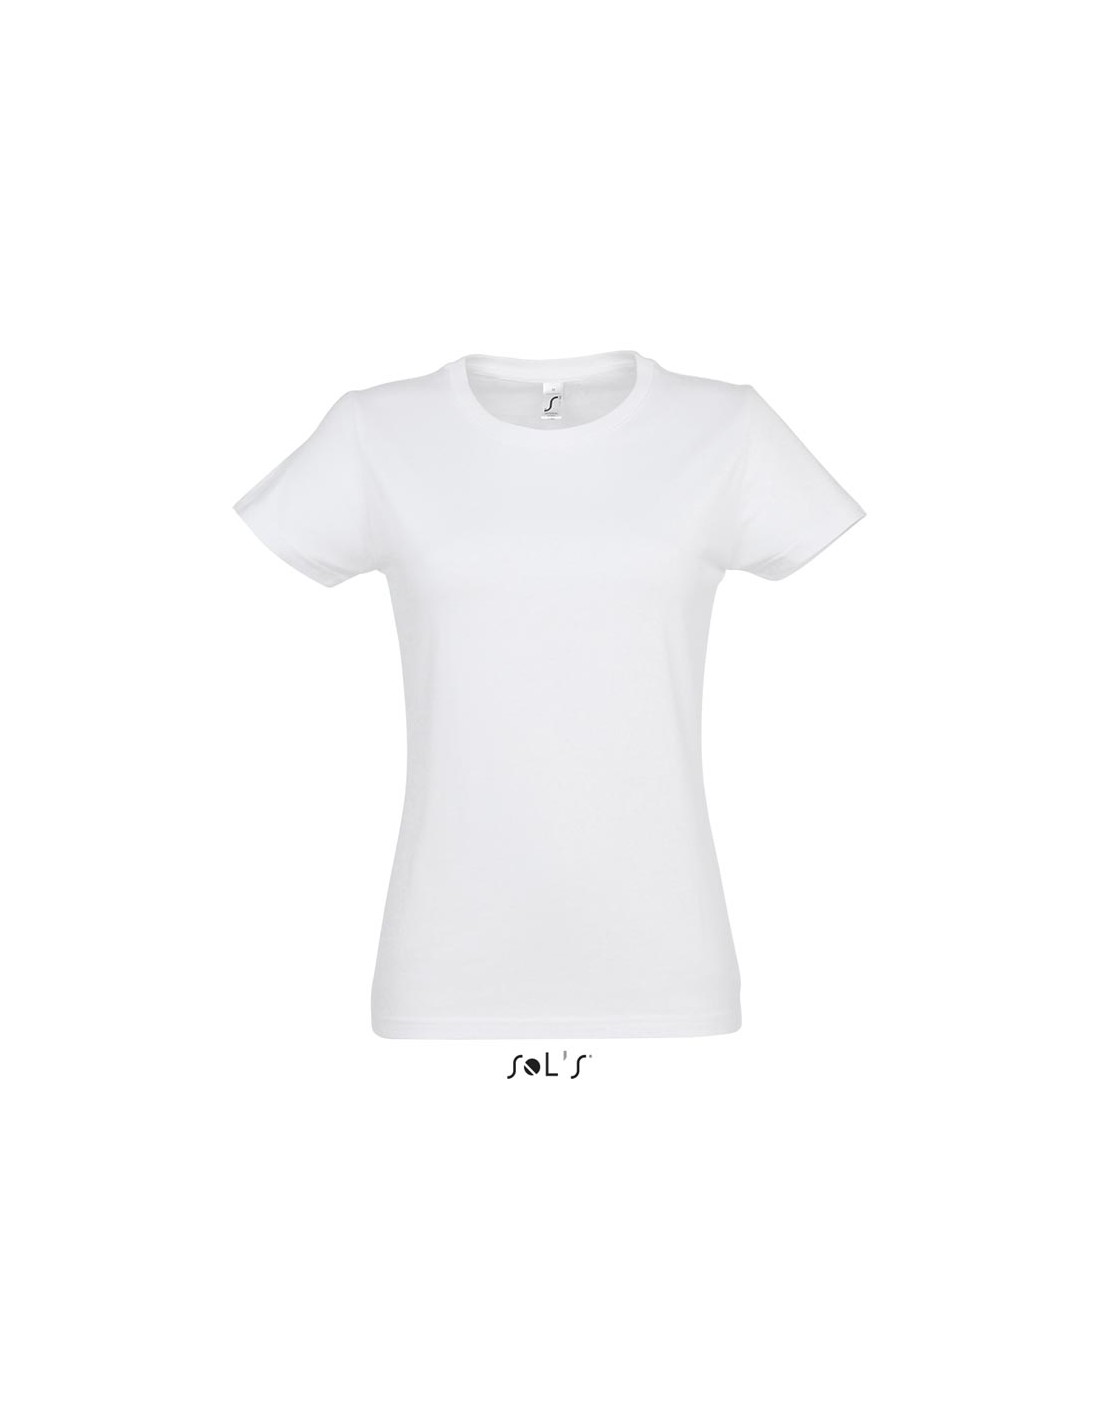 Reposición Animado Buena voluntad Camiseta blanca mujer personalizada